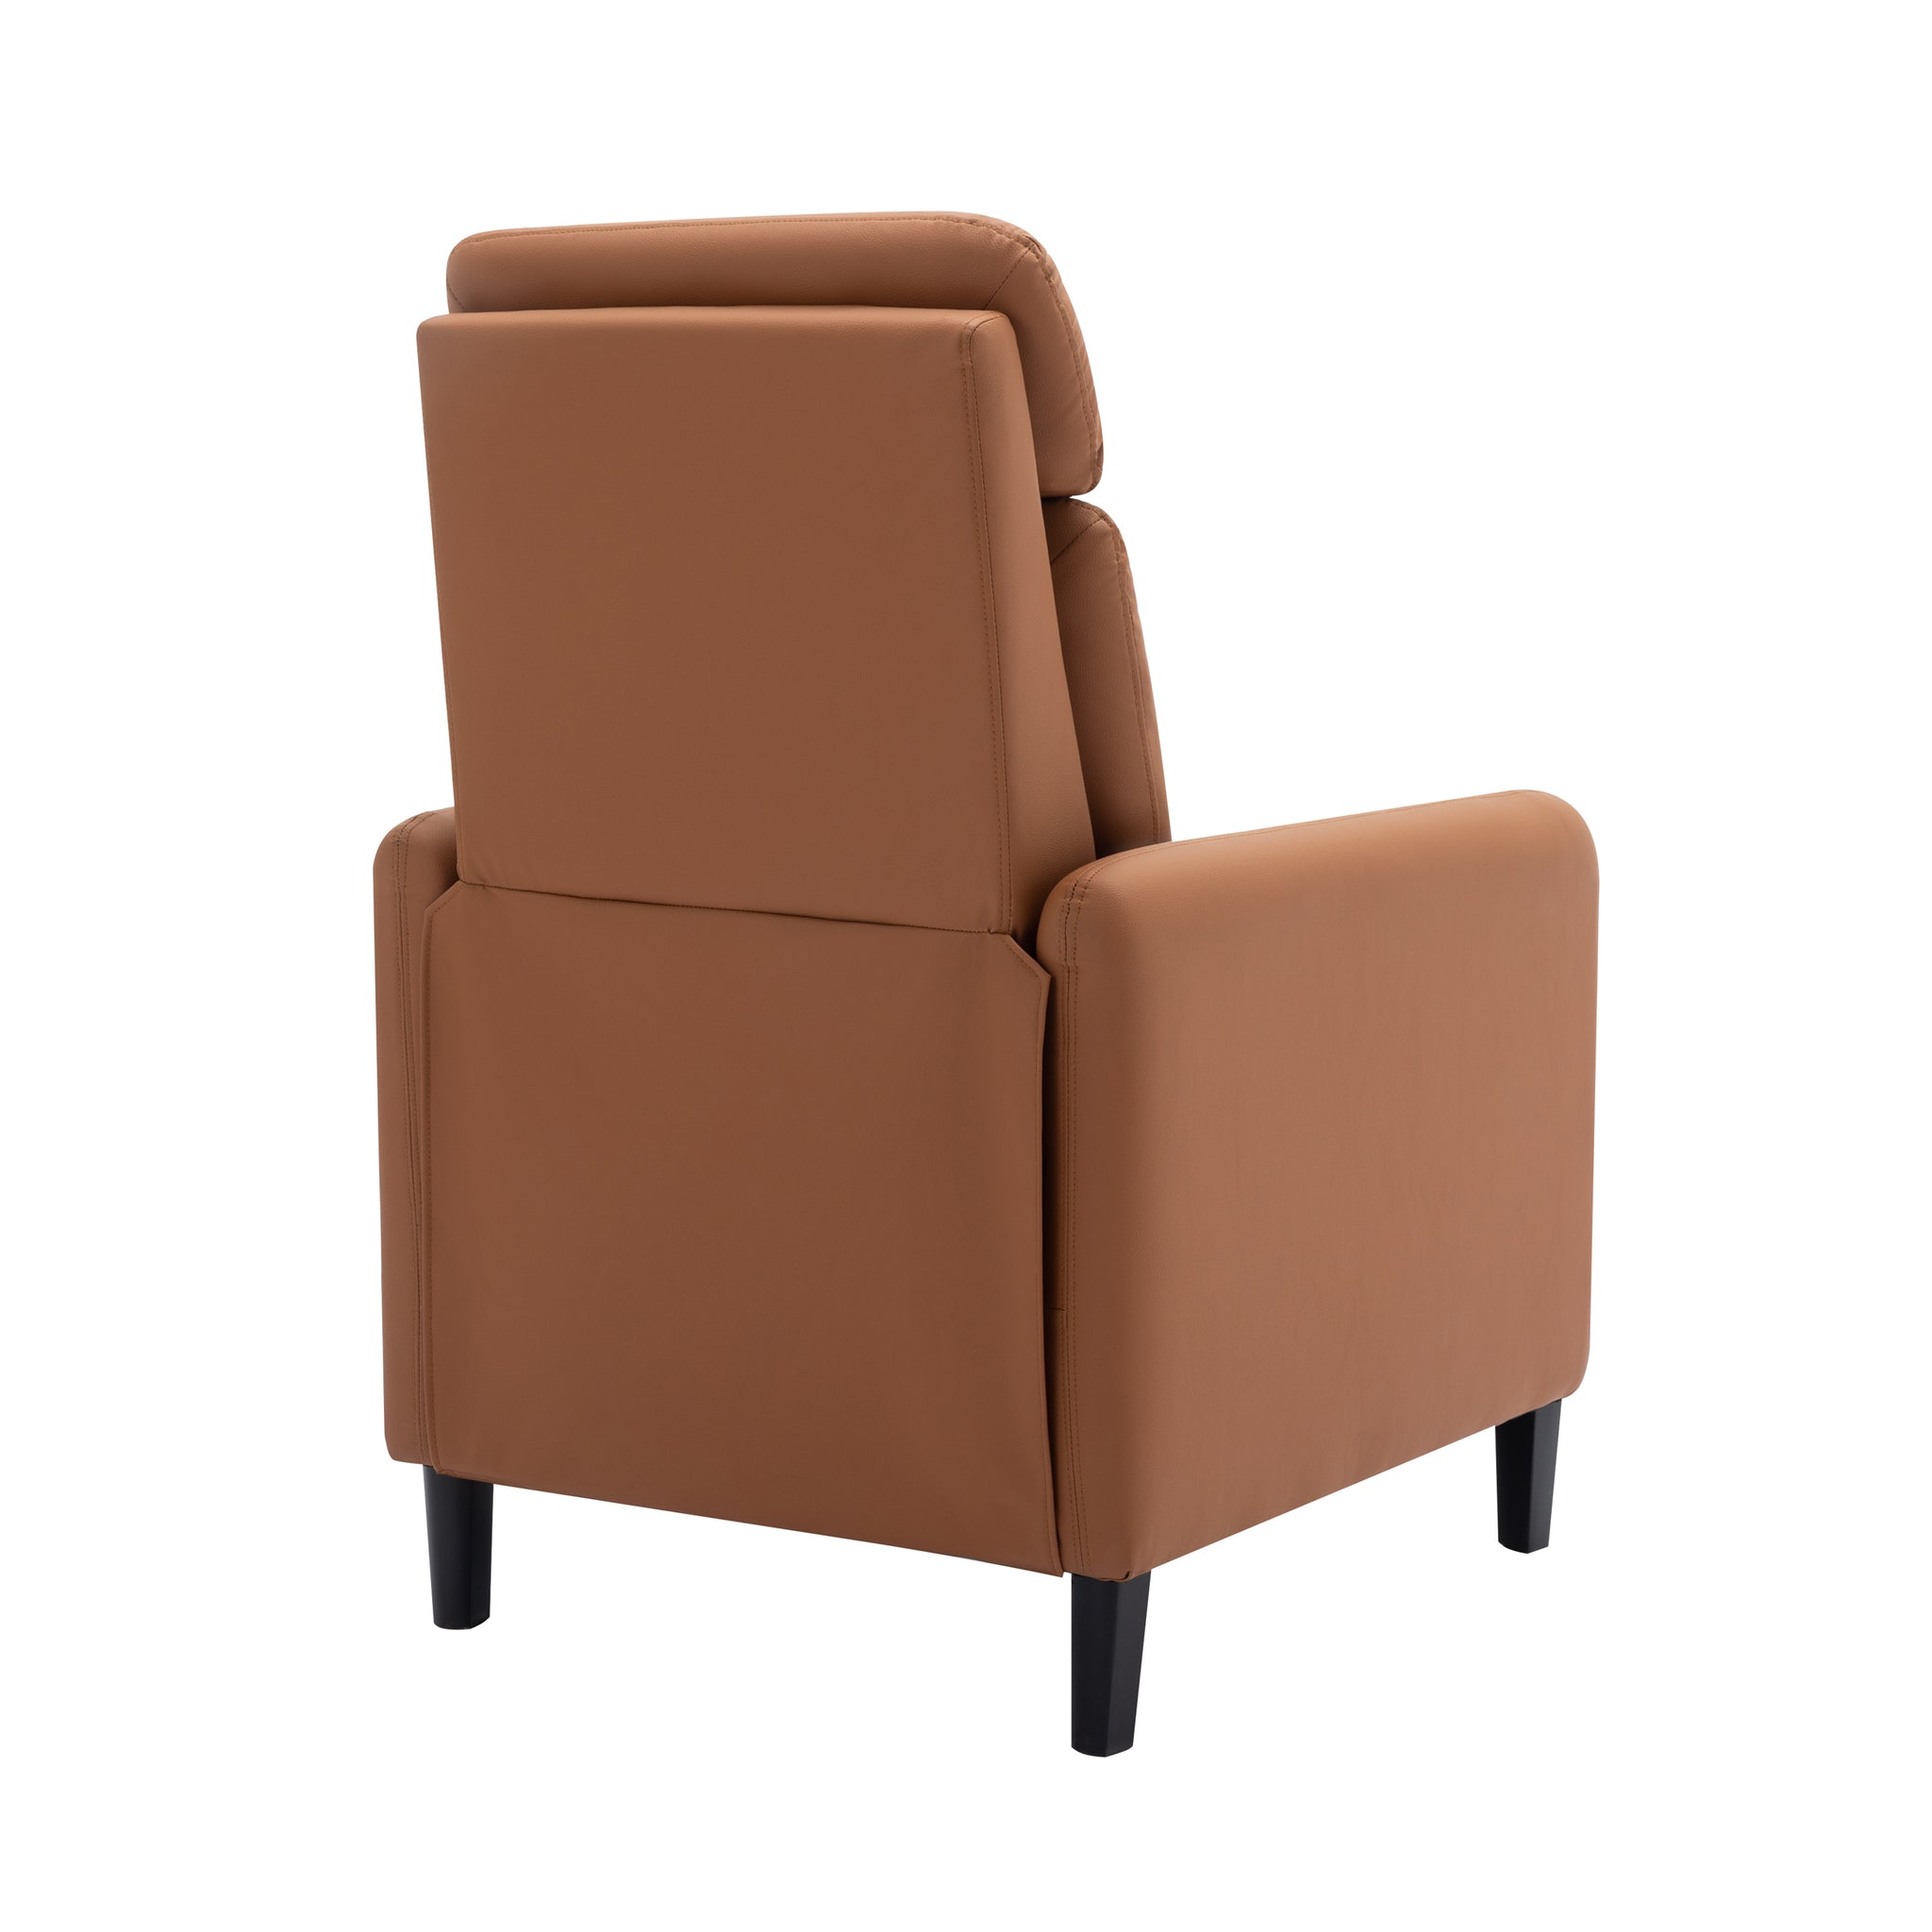 Modern Artistic Color Design Adjustable Recliner Chair burnt orange-pu leather